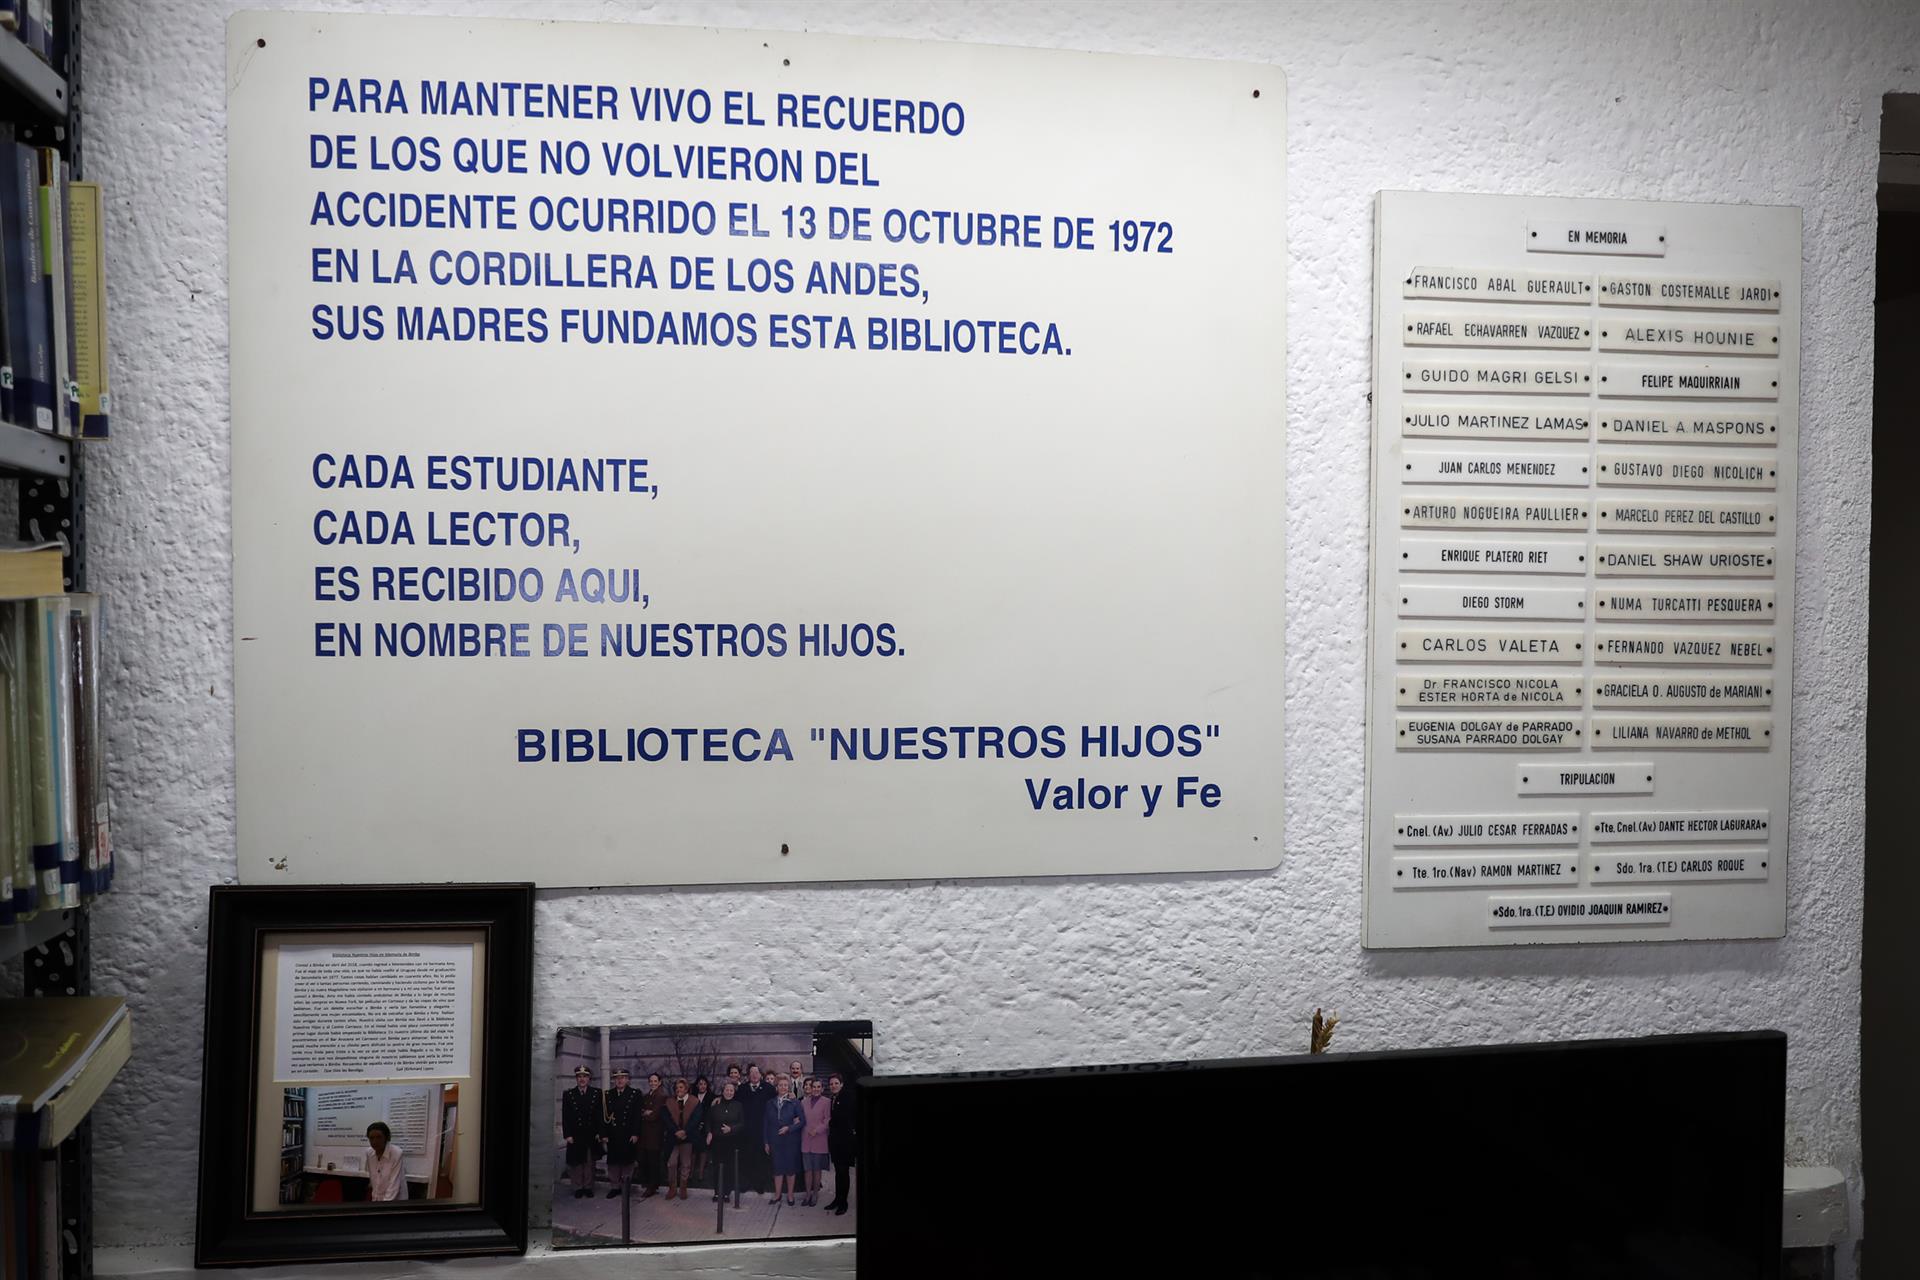 Fotografía de una placa en honor a los fallecidos durante la tragedia de Los Andes, en la entrada a la biblioteca "Nuestros Hijos", el 3 de octubre de 2022, en Montevideo (Uruguay). EFE/Alejandro Prieto